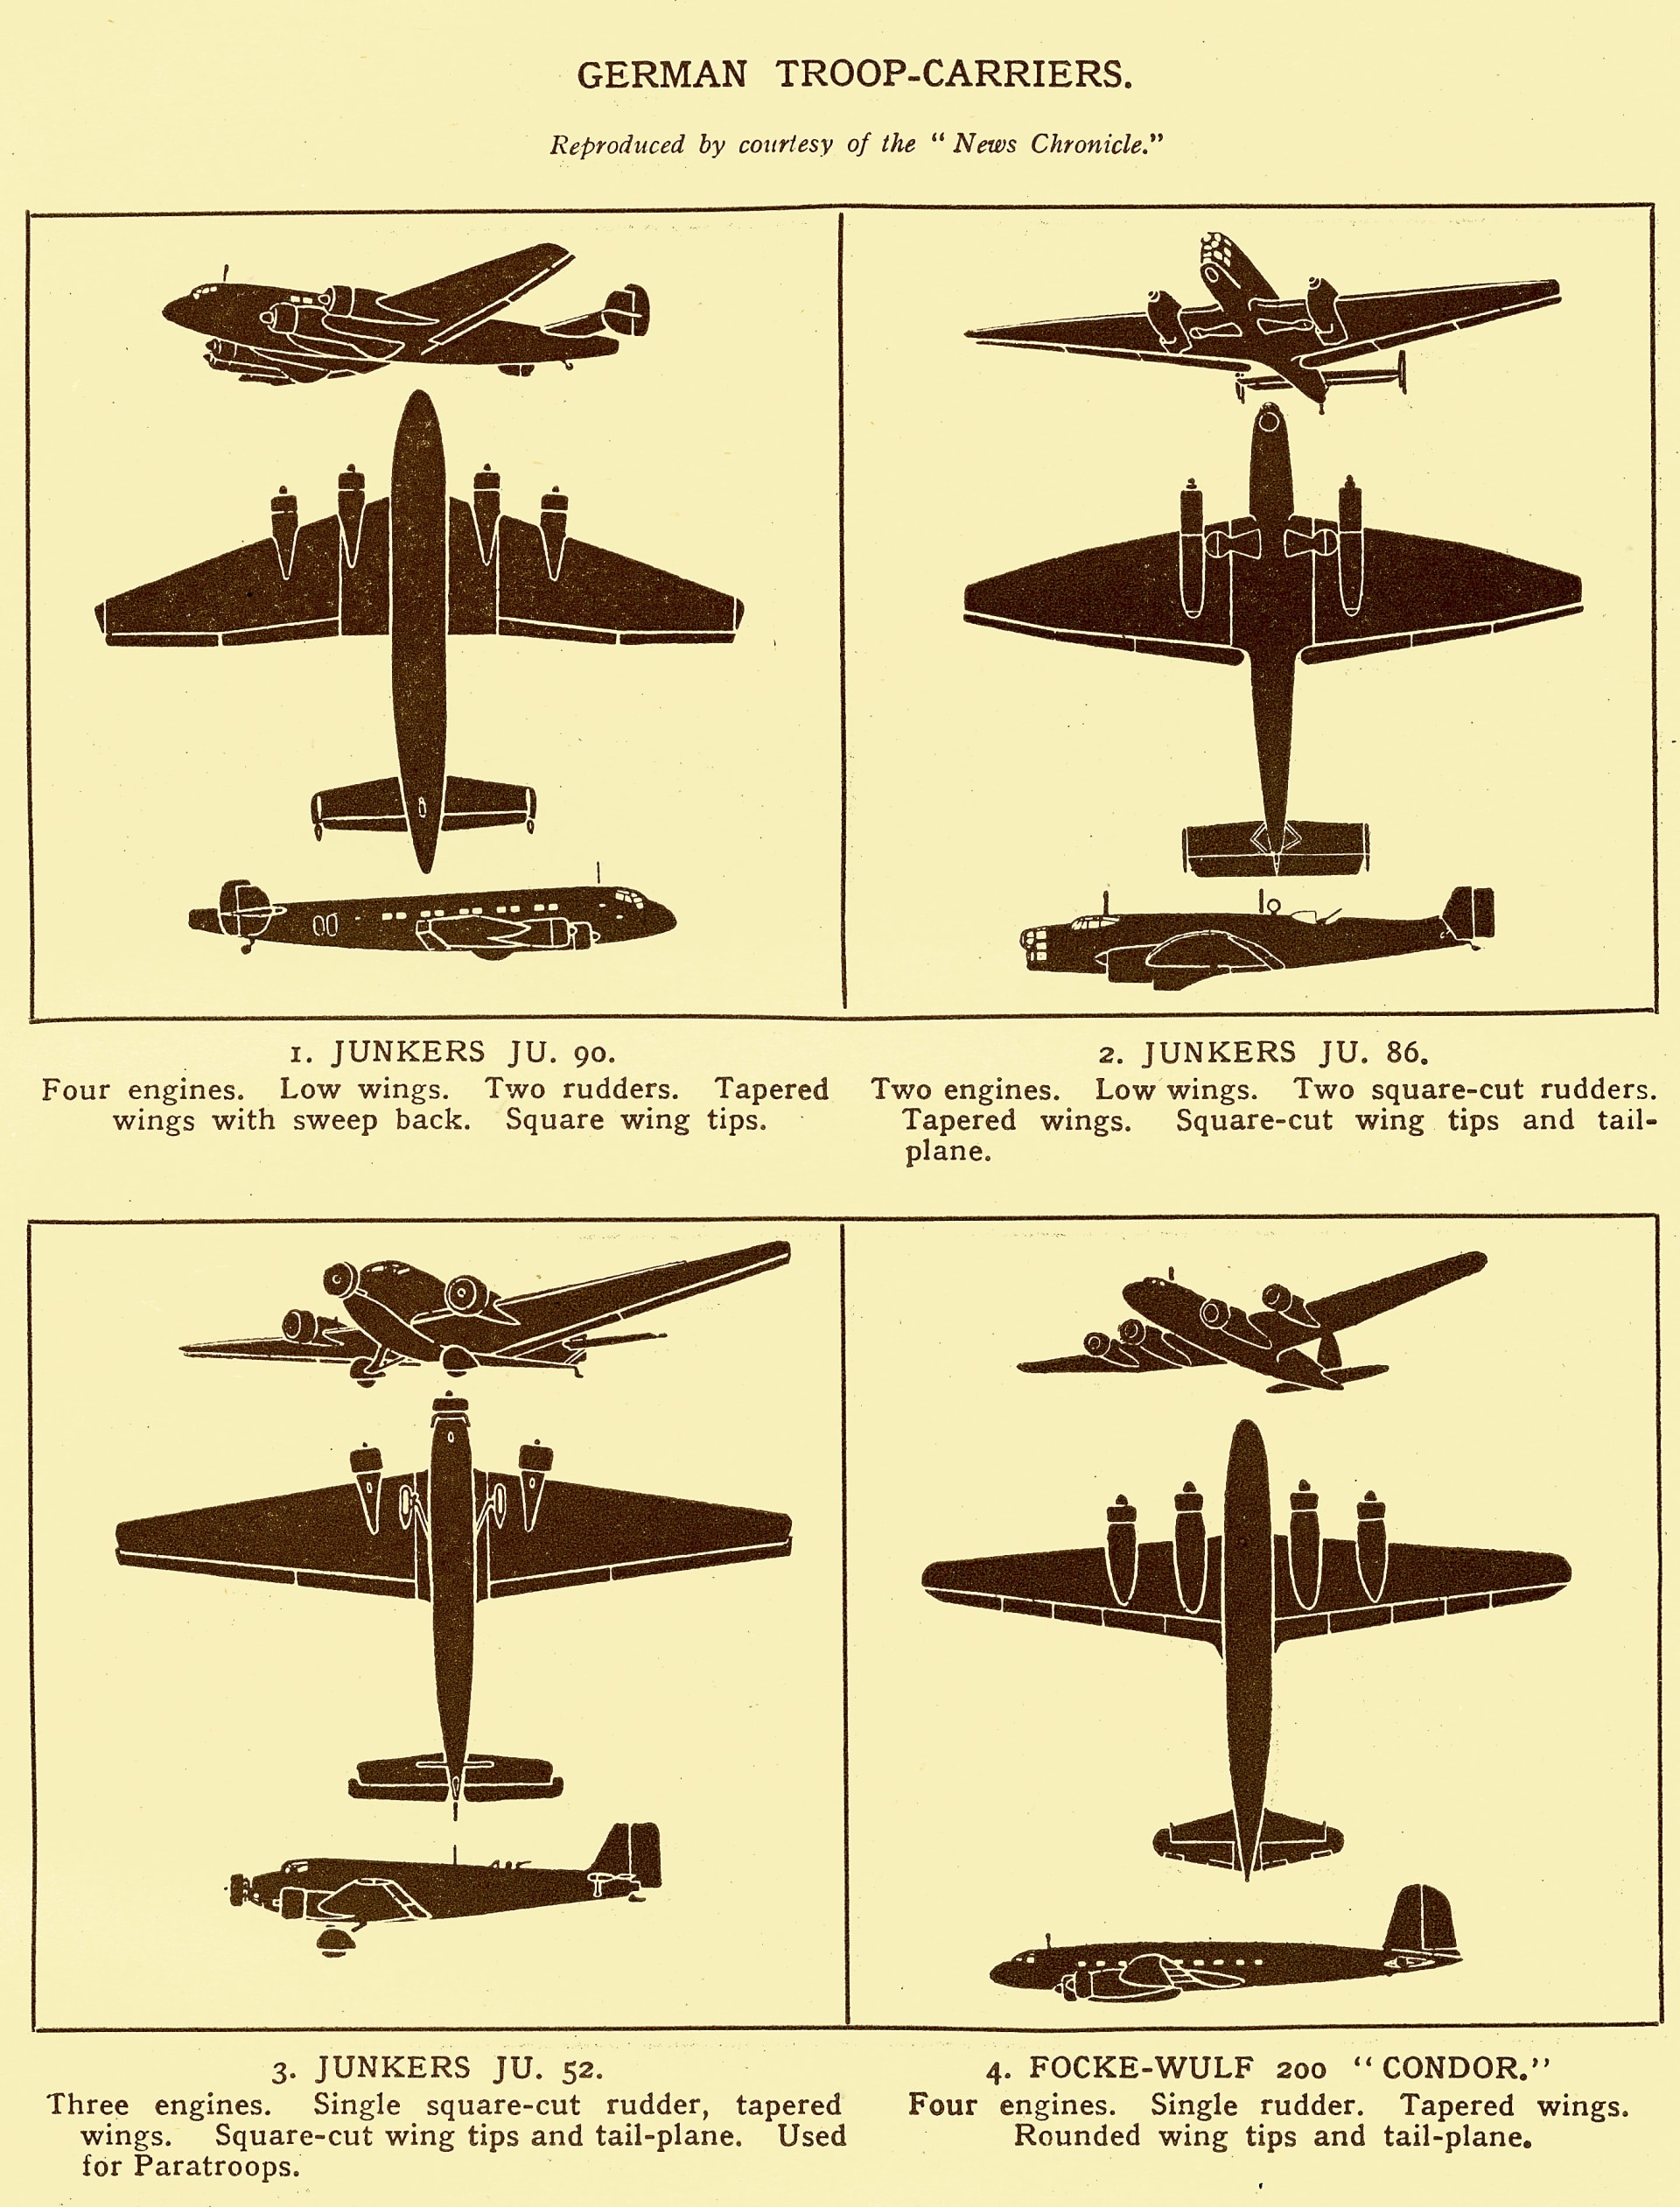 Porovnání německých vojenských transportních letadel